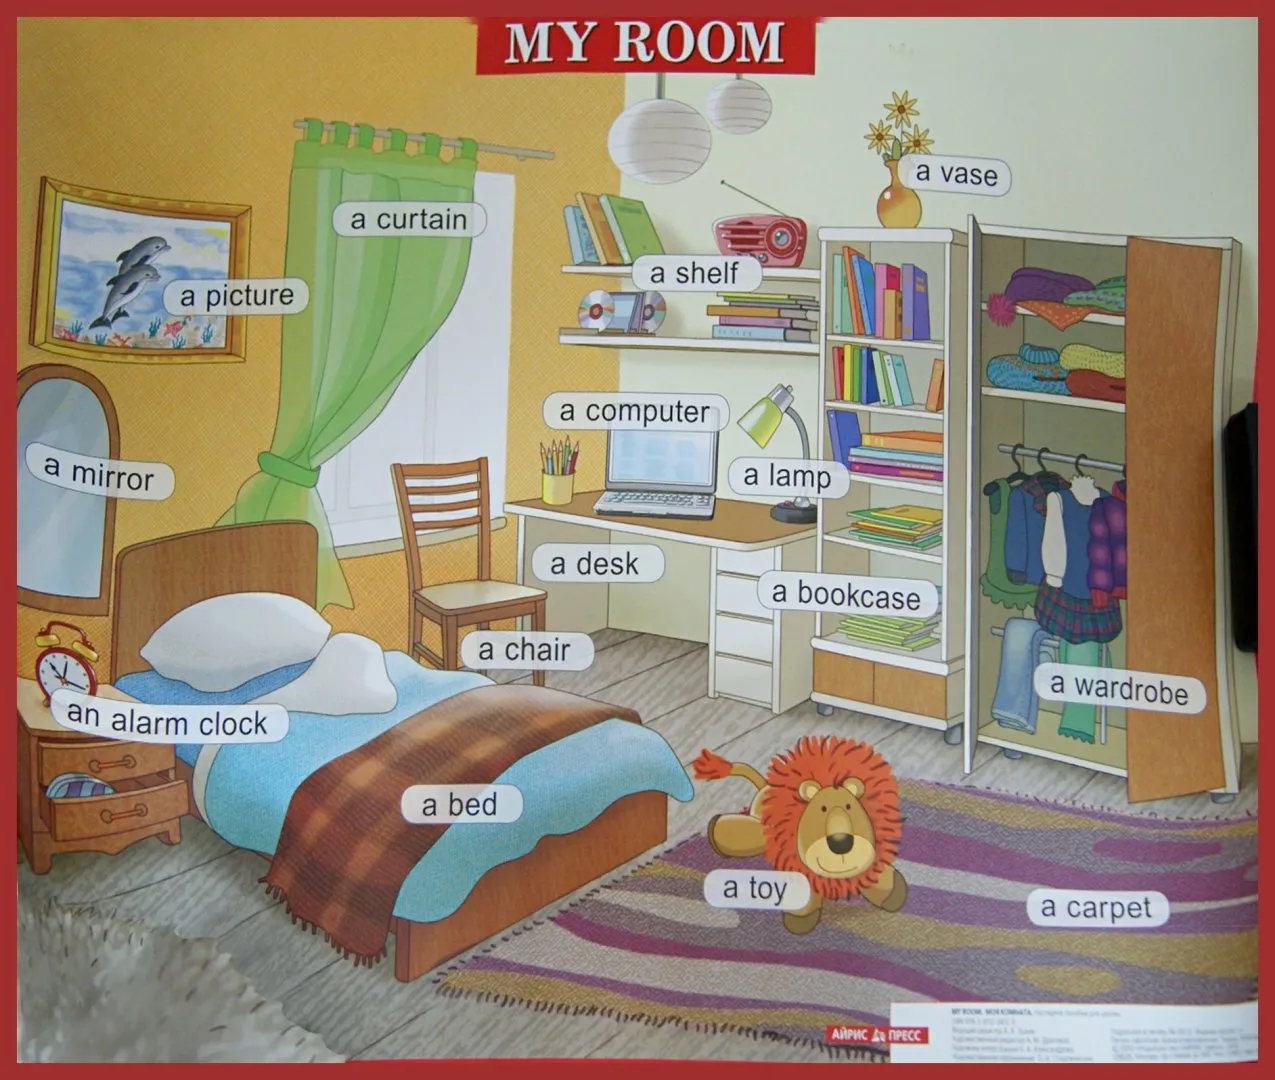 Английский язык тема комната. Картинка комнаты для описания. Комнаты на английском языке. Описание комнаты. Картинки комнаты для описания на английском языке.